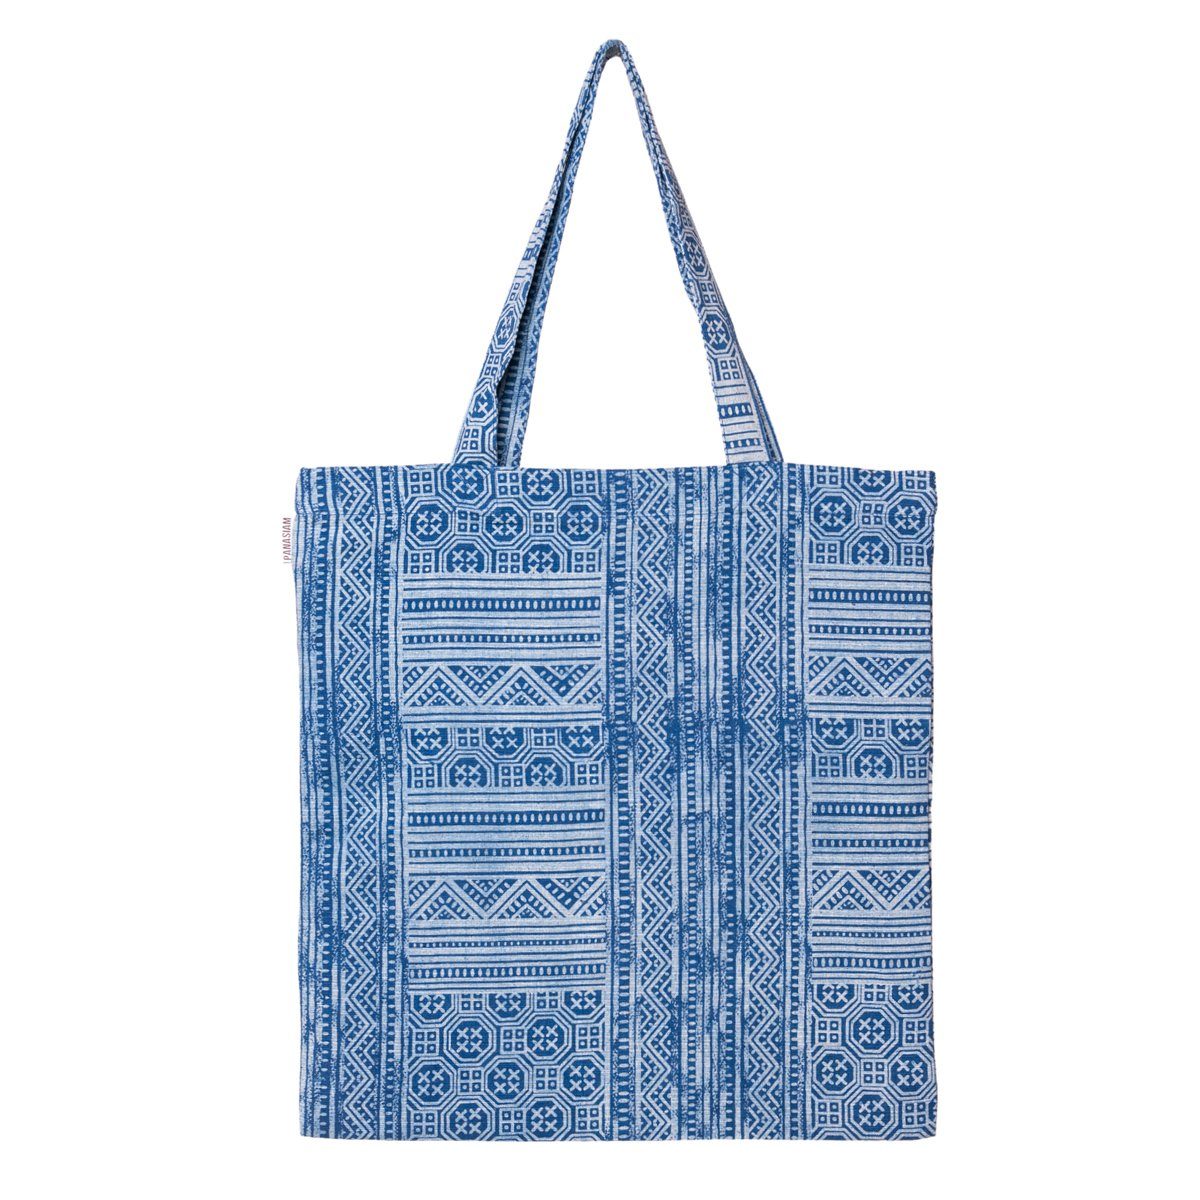 PANASIAM Beuteltasche Geometrix Baumwollbeutel auch als Einkaufstasche oder Schuhbeutel, aus 100% Baumwolle Jutebeutel mit traditionellen japanischen Mustern azteken pattern